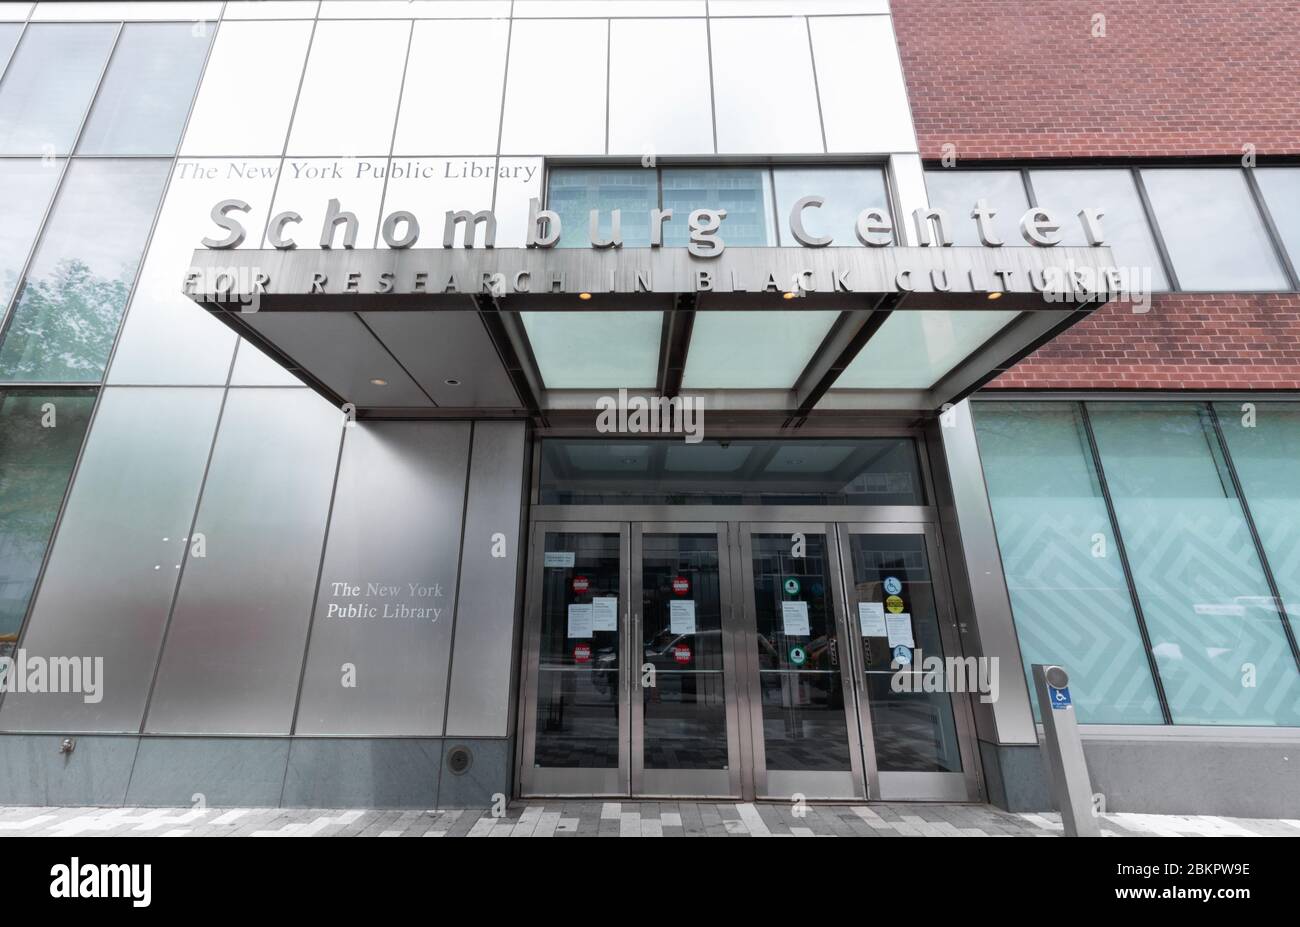 Schomburg Center for Research in Black Culture in Harlem, eine Zweigstelle der New York Public Library mit Sondersammlungen zur afroamerikanischen Kultur Stockfoto